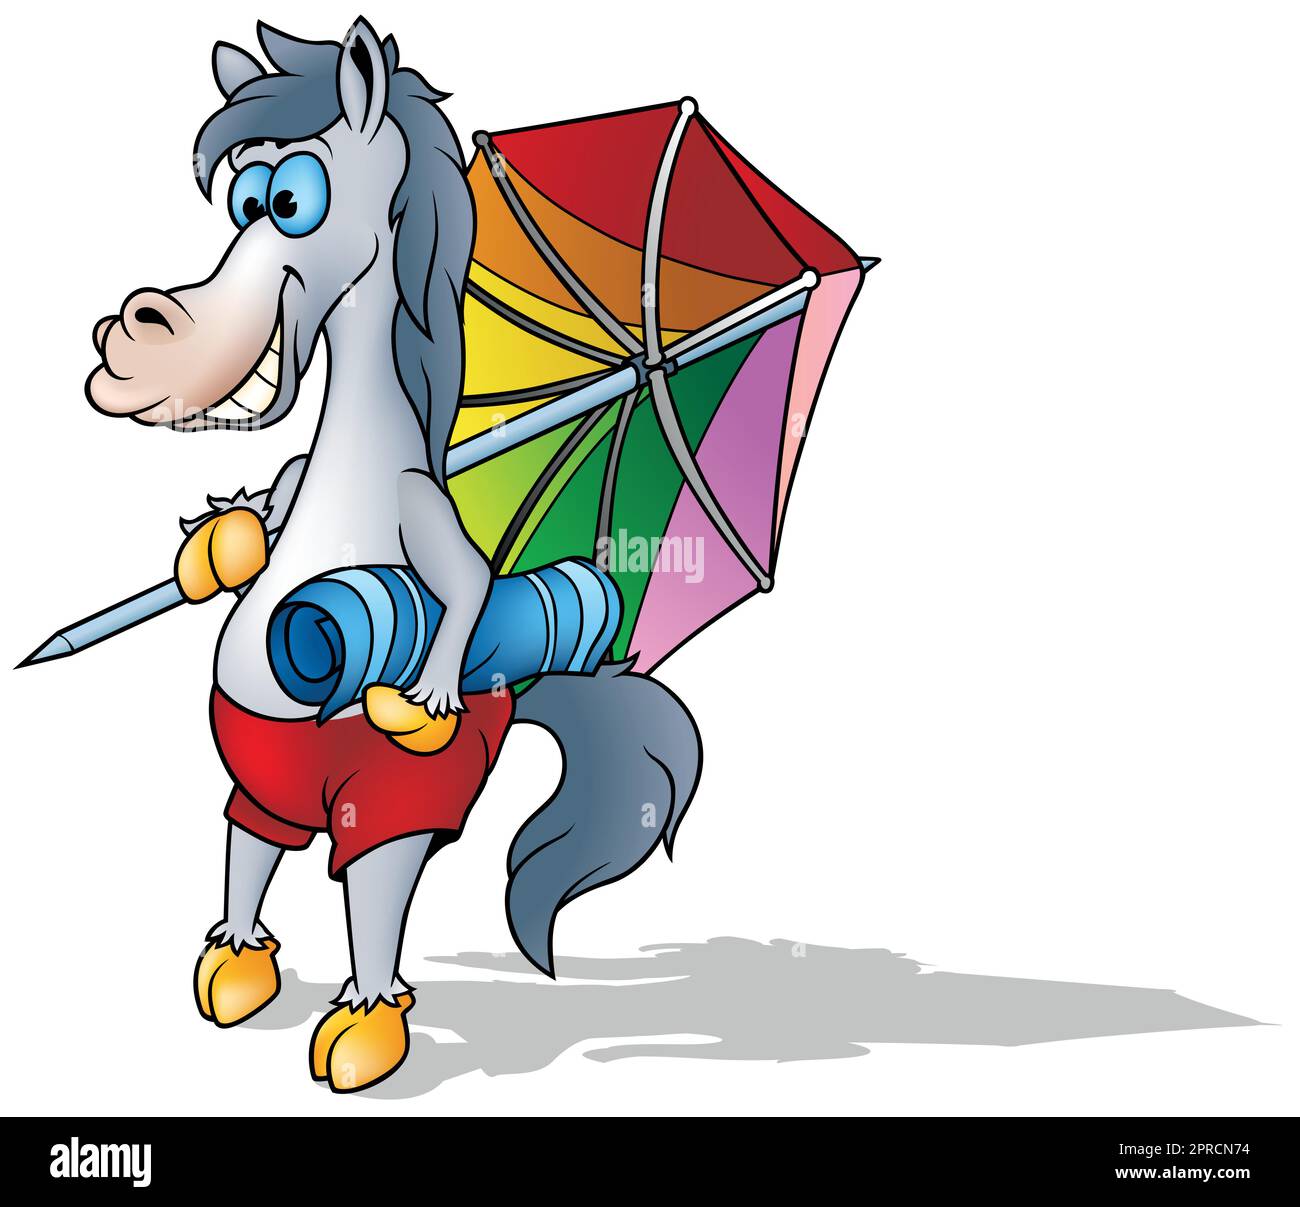 Graues Pferd mit farbenfrohem Sonnenschirm Stock Vektor